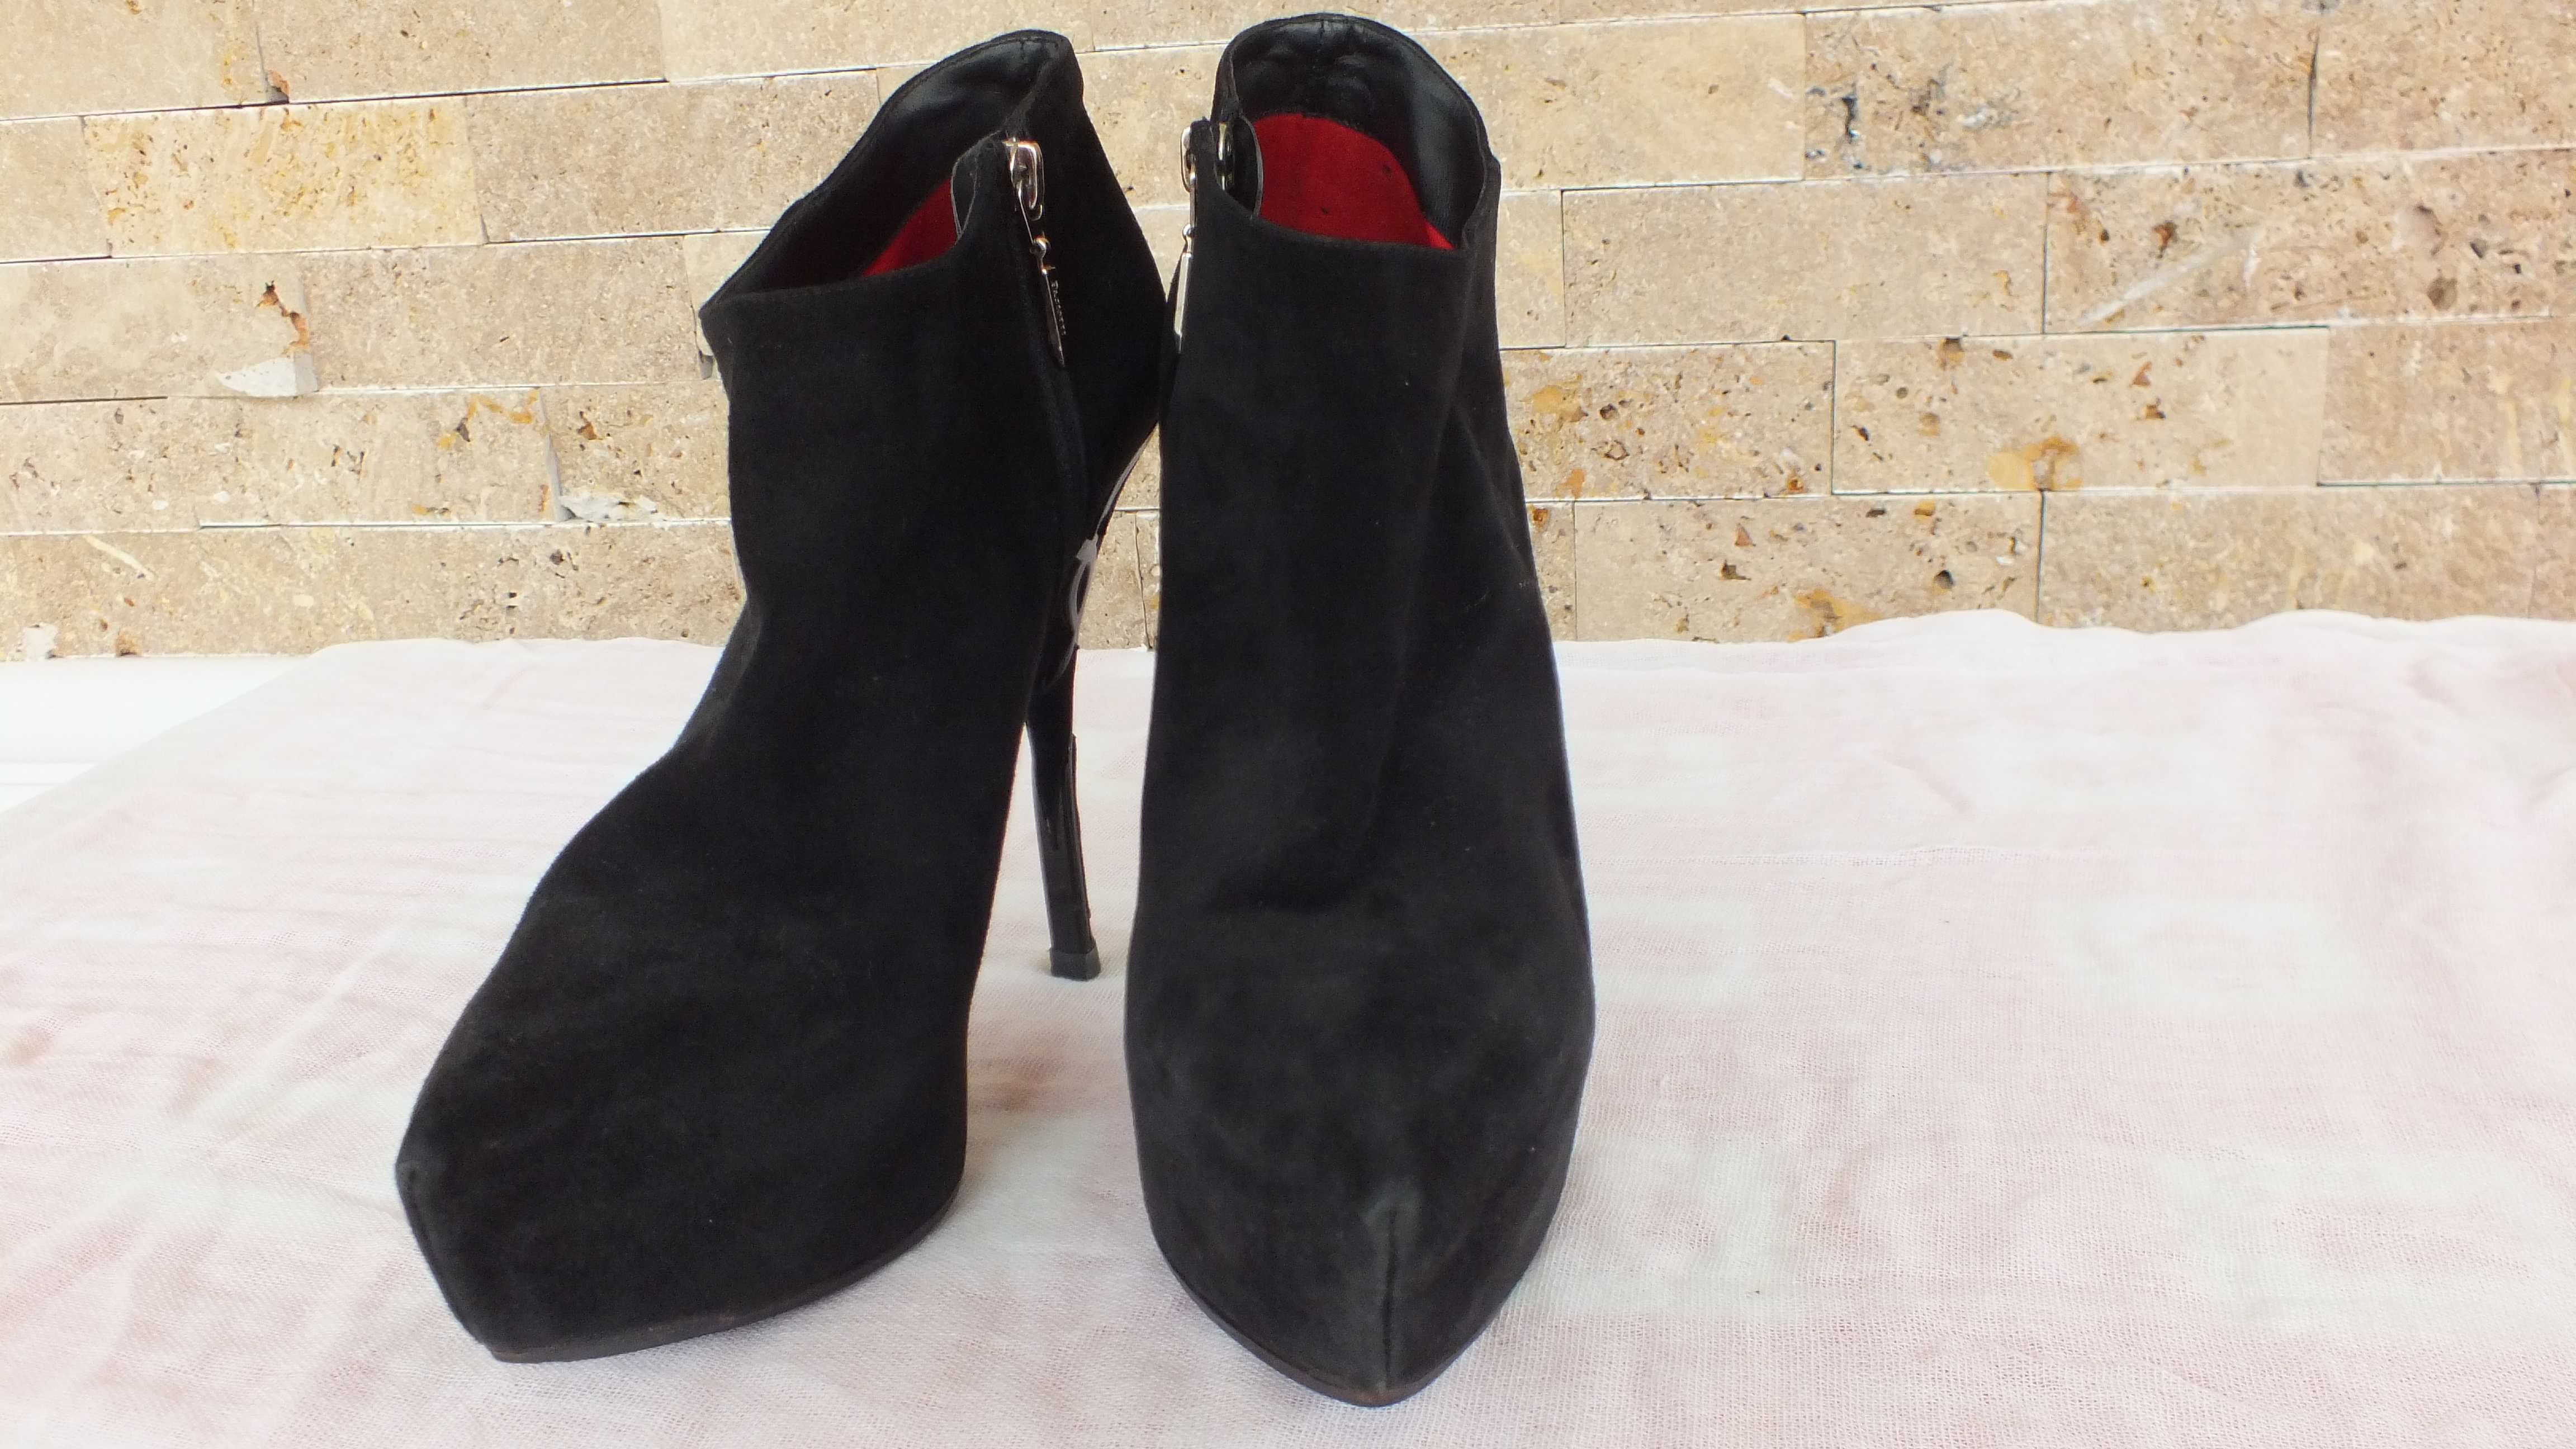 Pantofi si ghete Cesare Paciotti, produse originale din Italia.